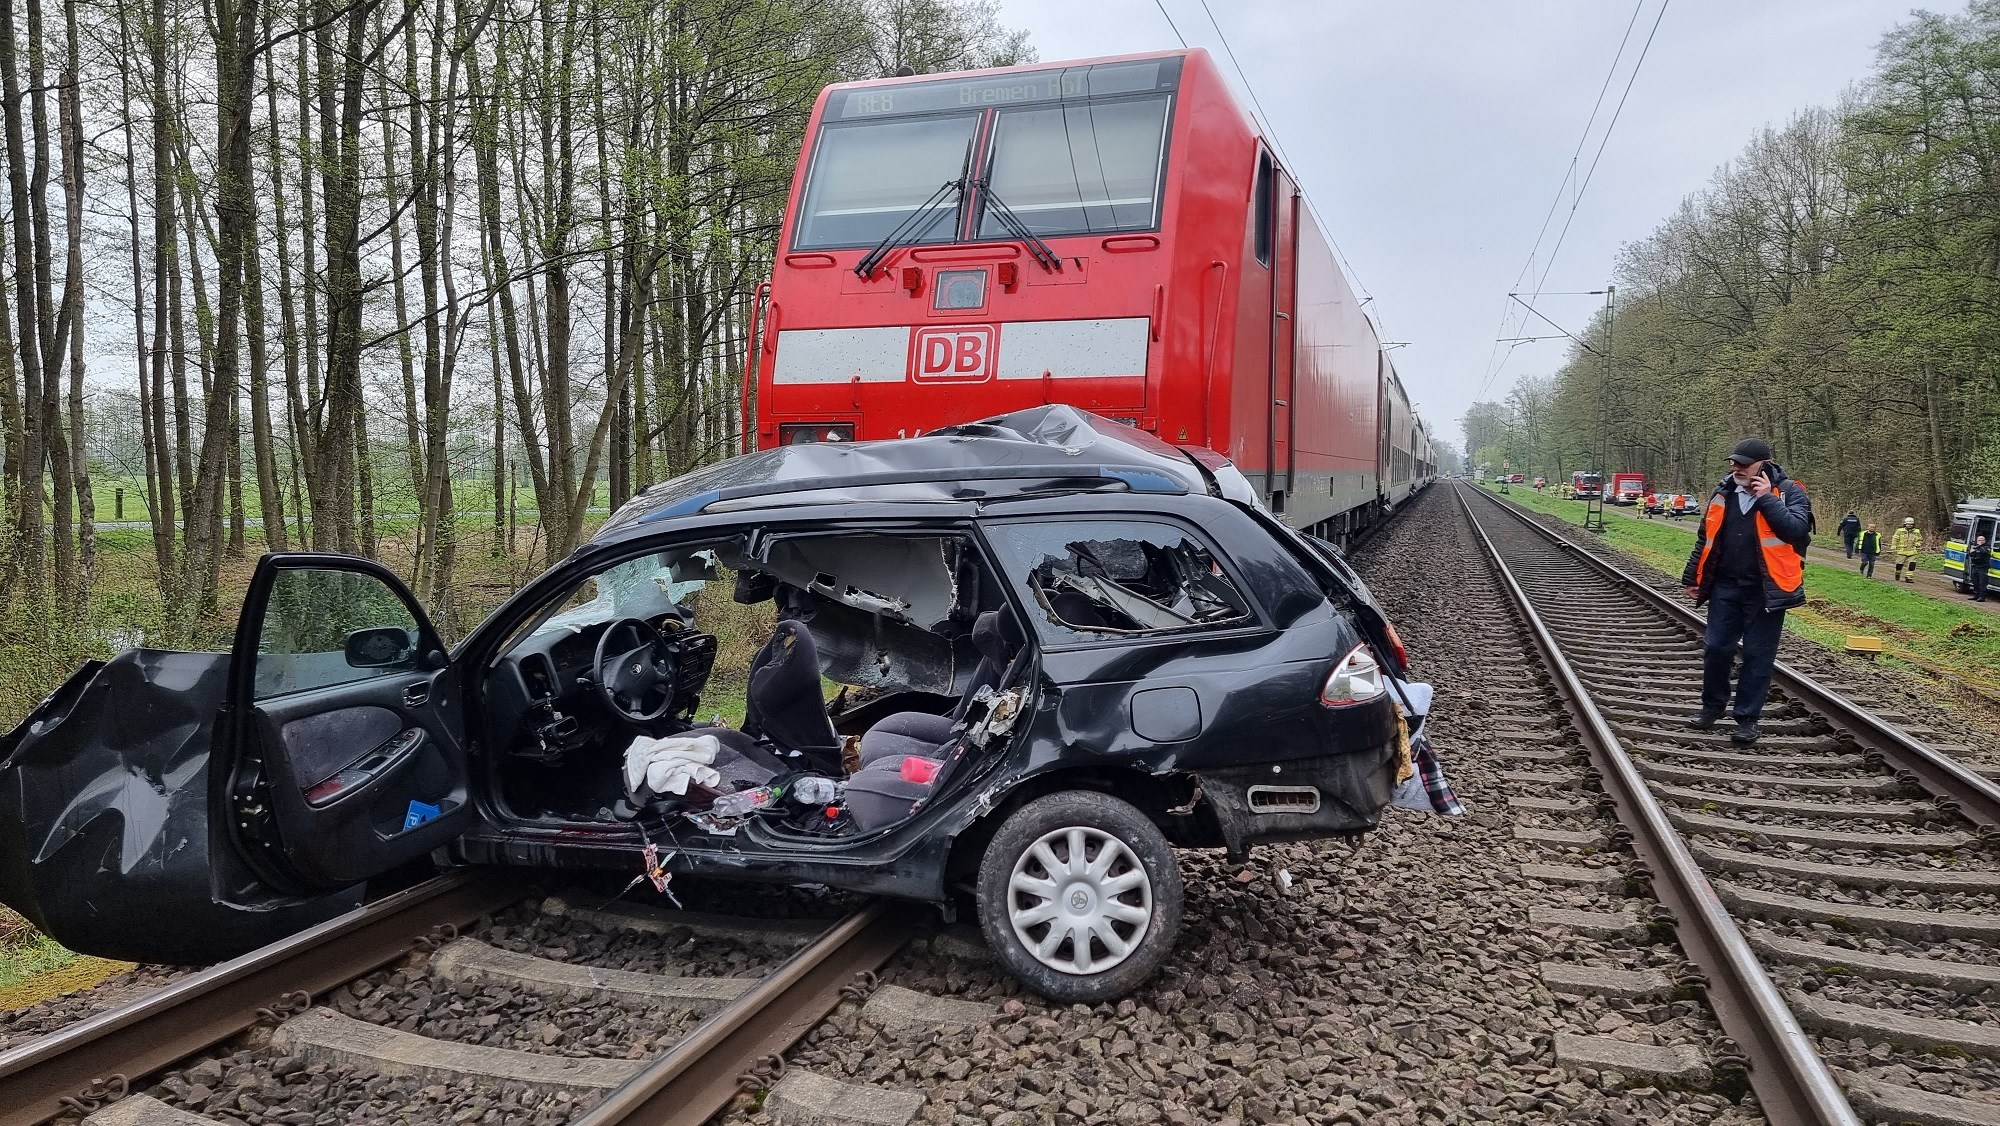 Life + Style: Ocurrió un fatal accidente de tren en Alemania